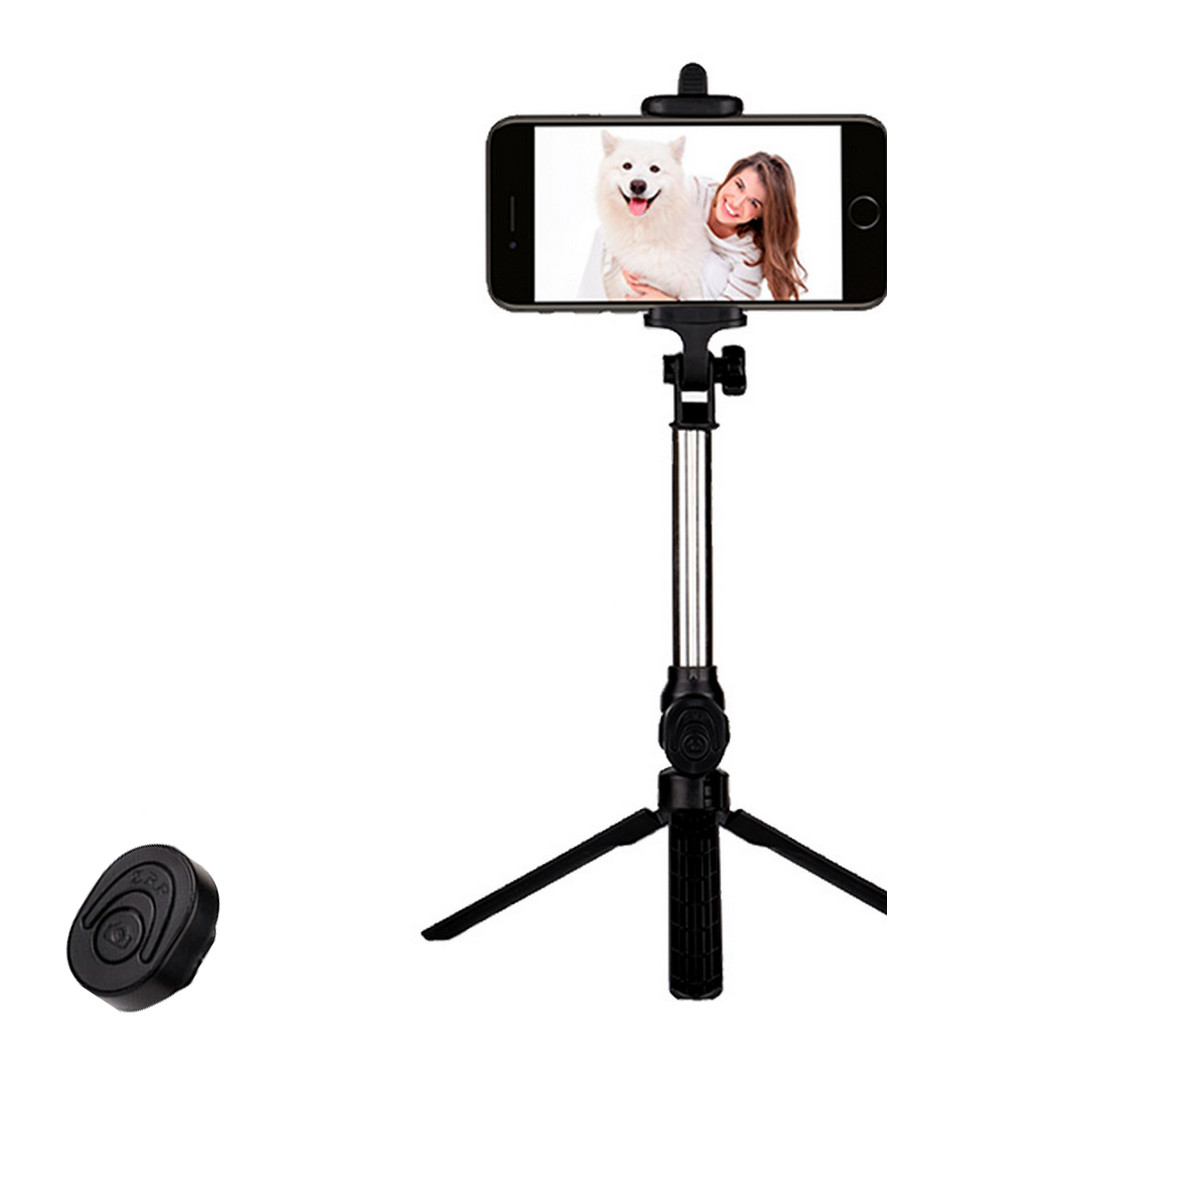 Gậy chụp hình tự sướng Selfie tripod bluetooth 28 kèm remote - Hàng Chính Hãng